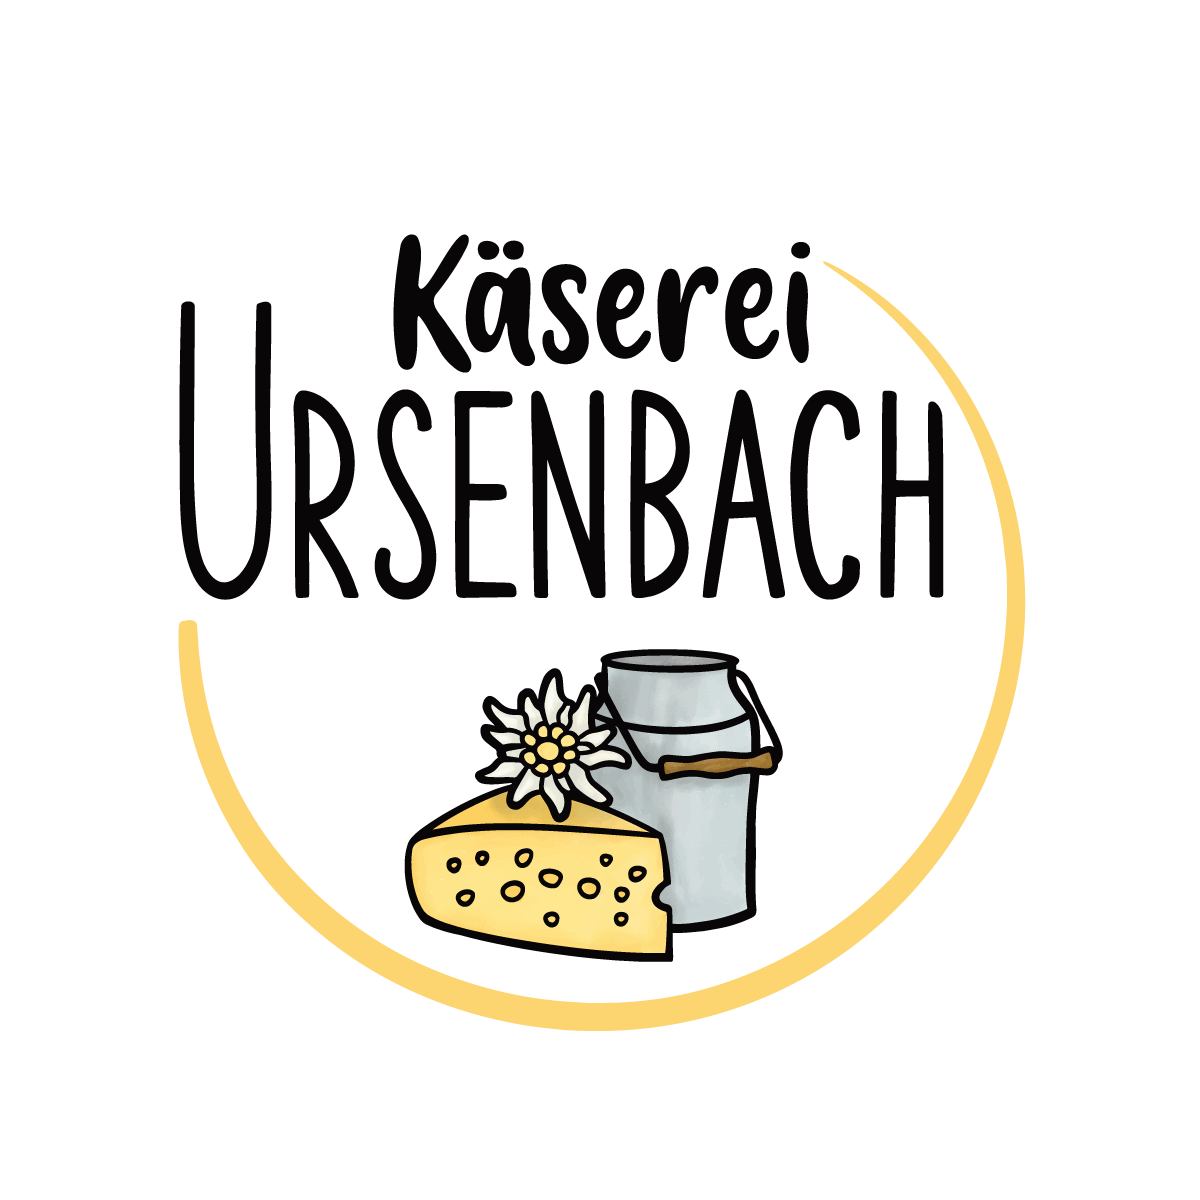 Käserei Ursenbach